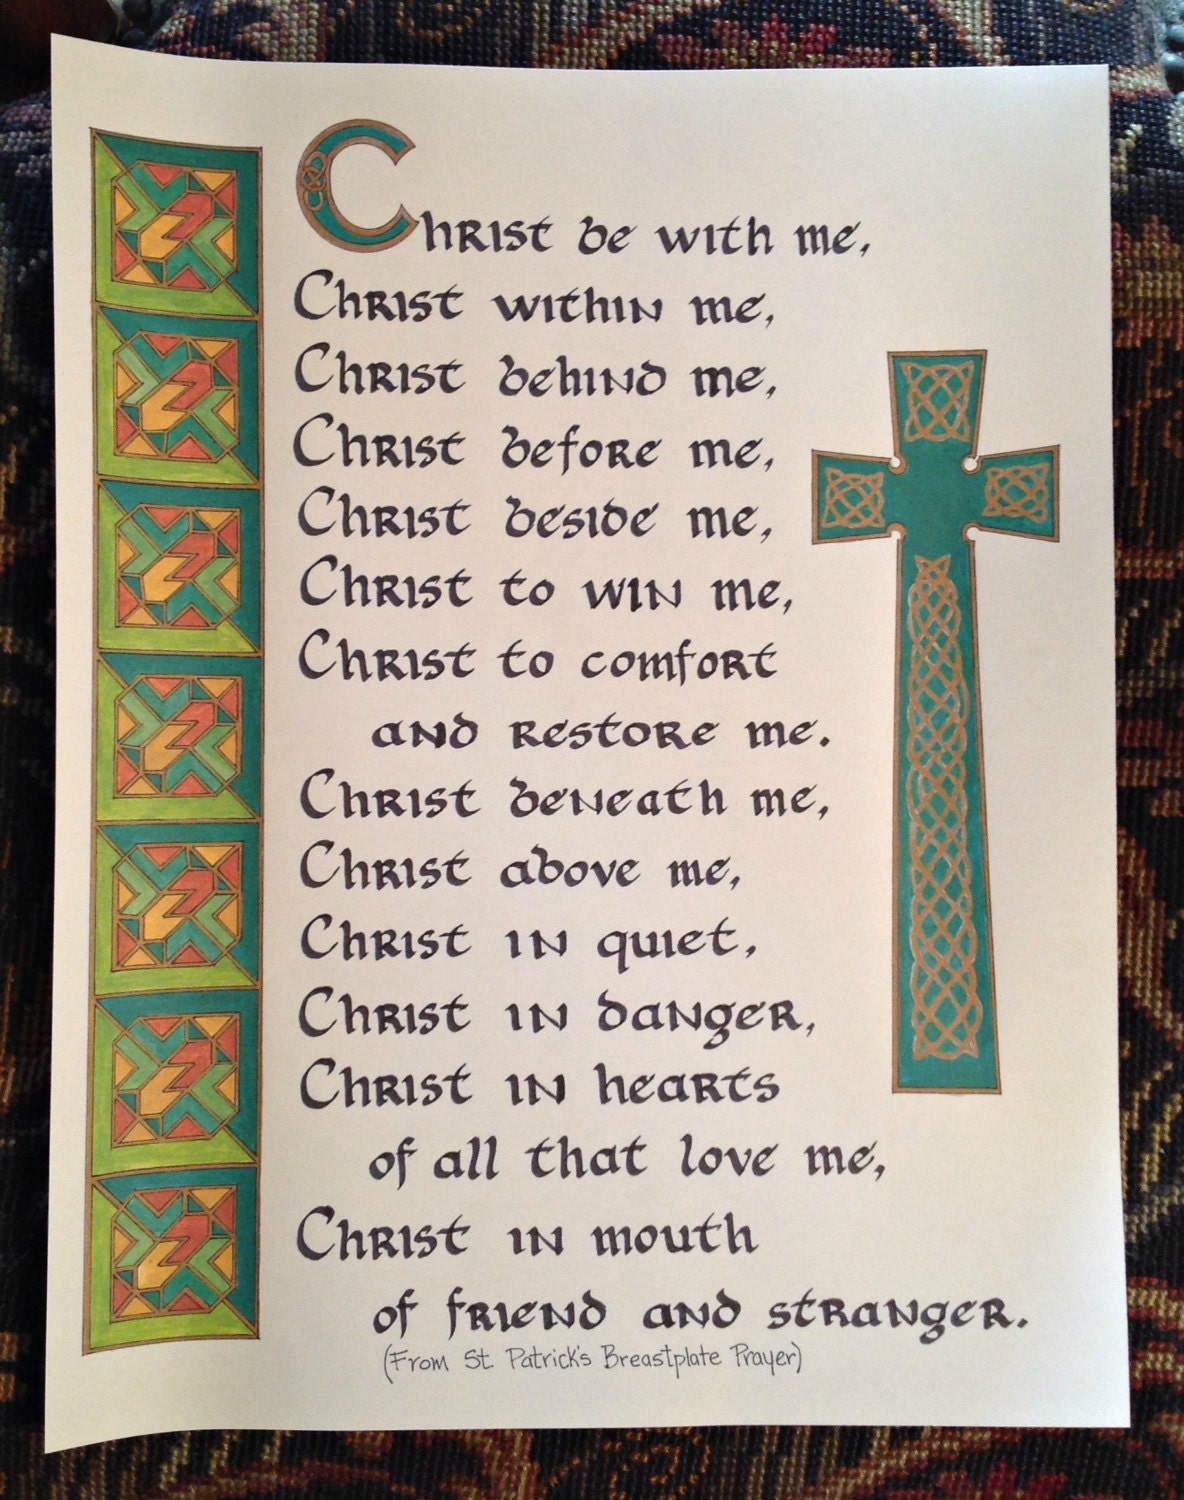 St. Patrick's Breastplate Prayer